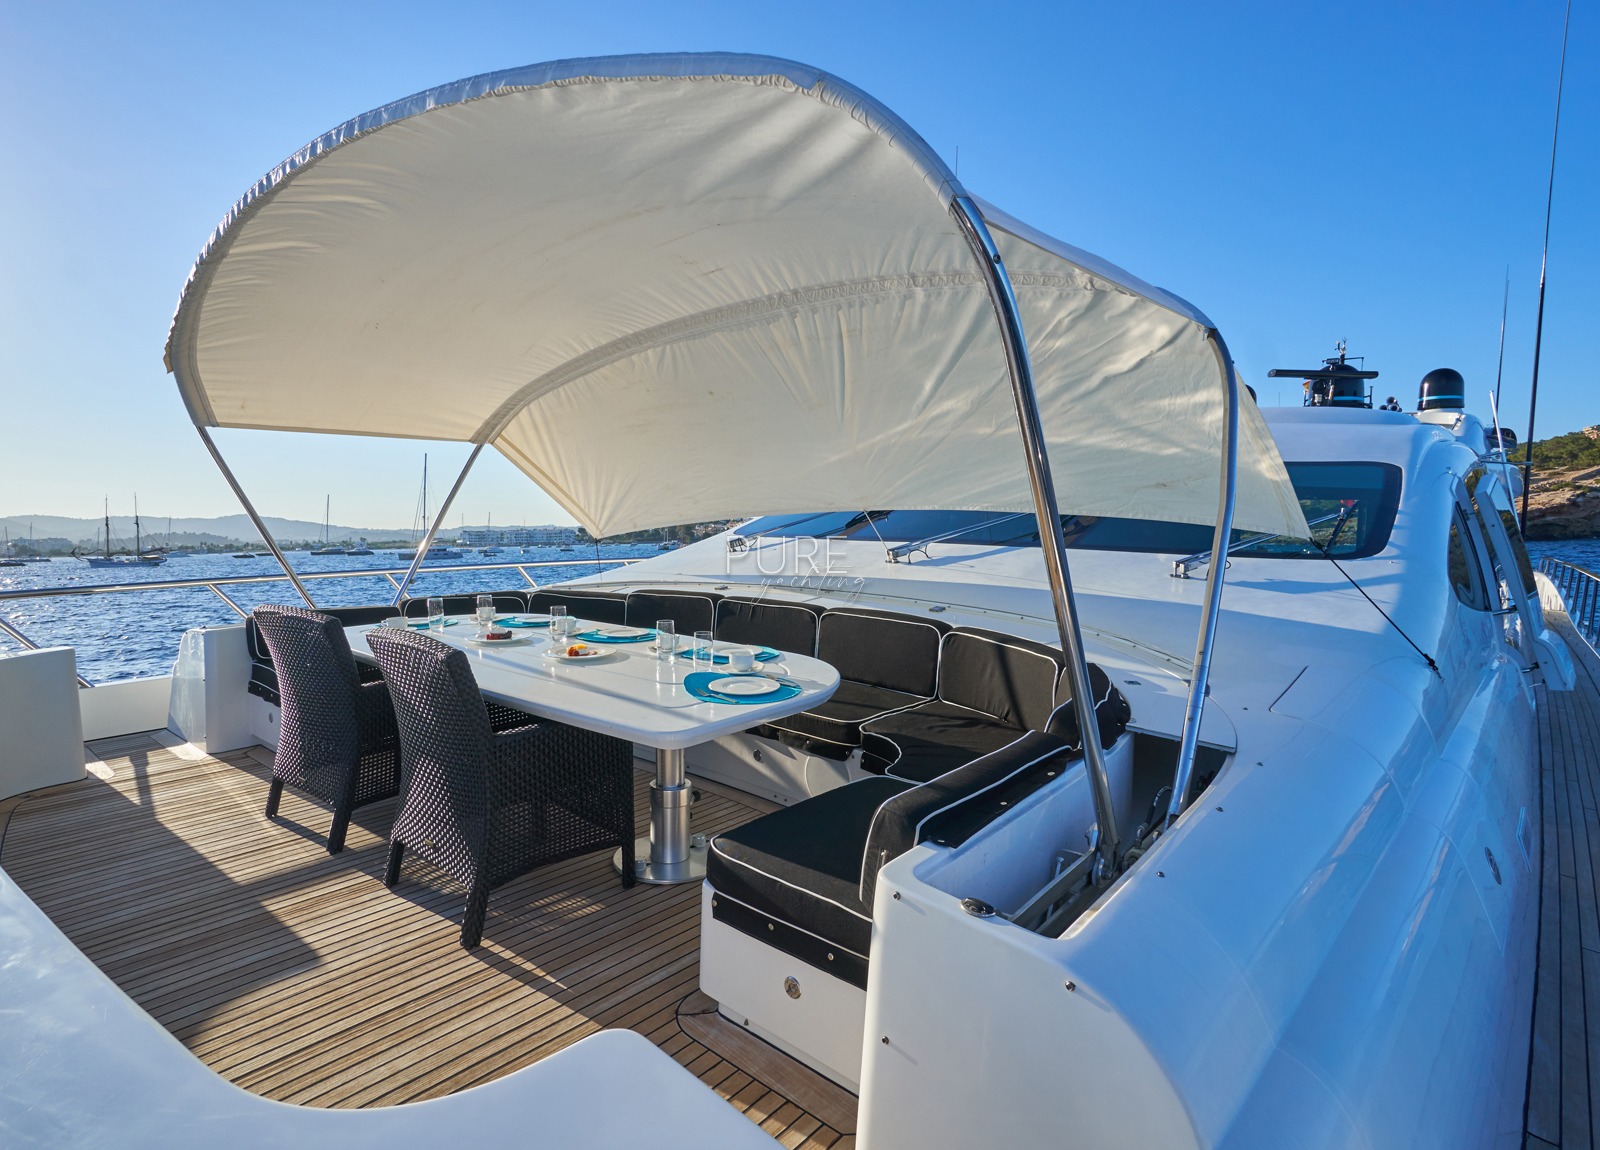 upperdeck luxury yacht mangusta 130 shane balearic islands